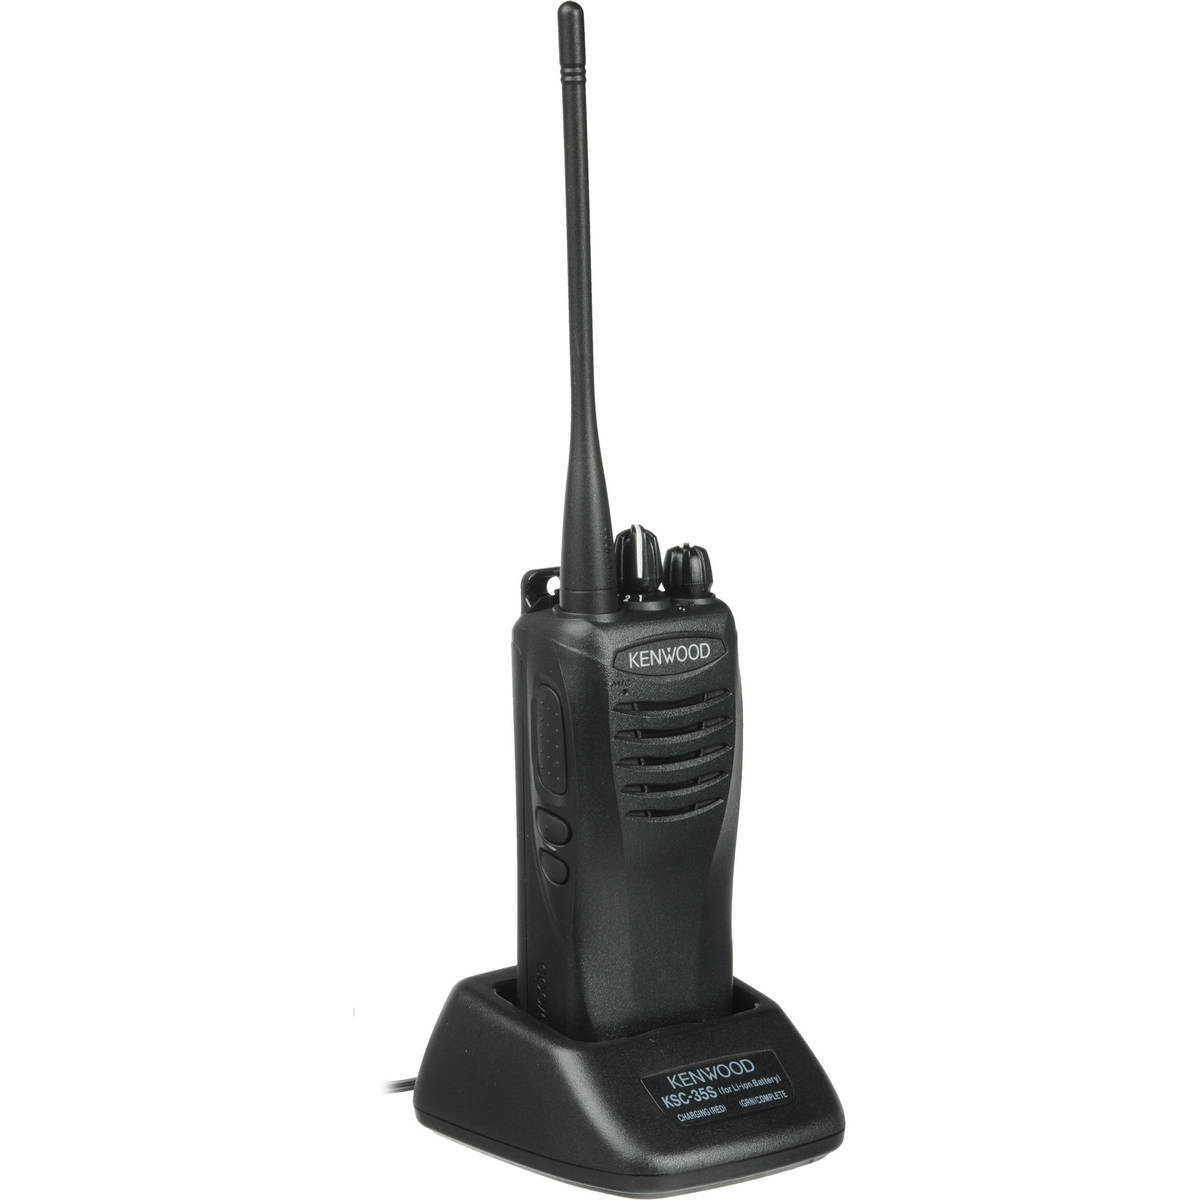 Radio KENWOOD TK-3402 Analógico UHF 400-470 MHz